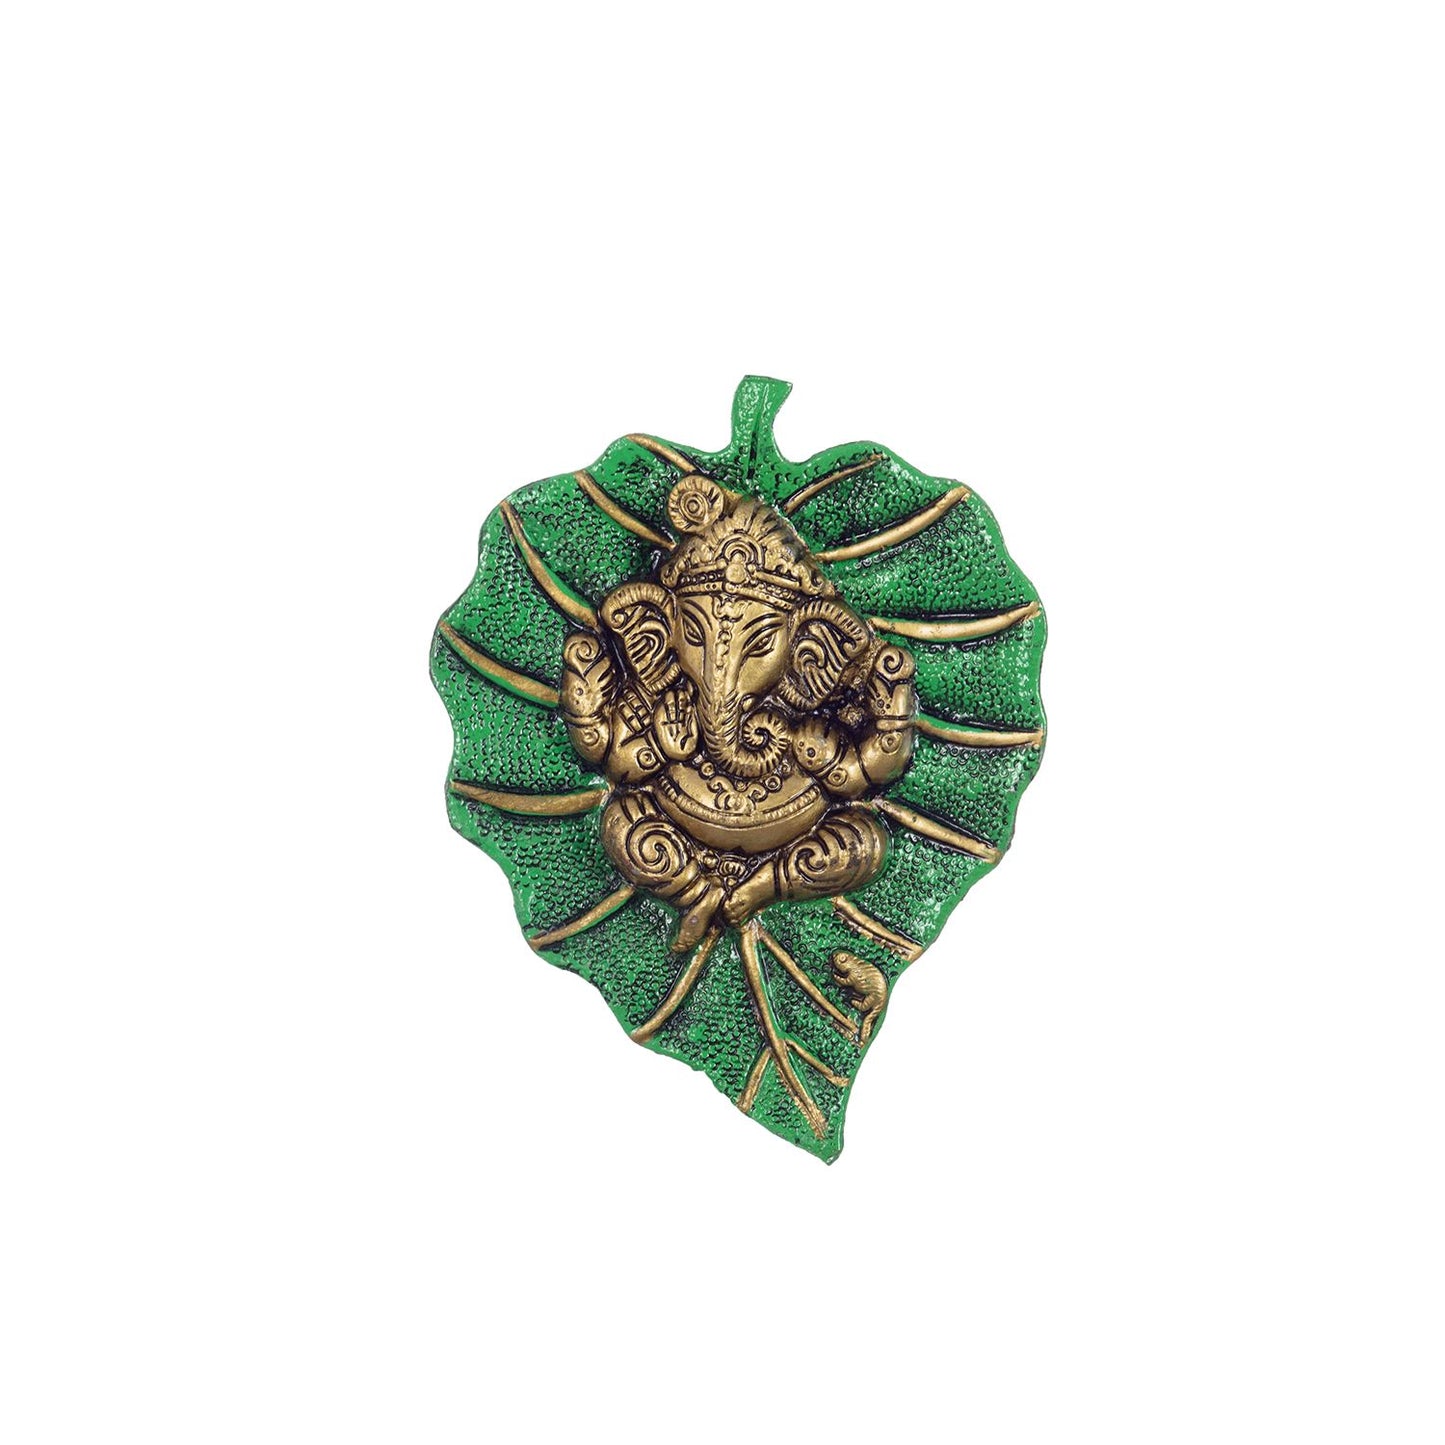 Lord Ganesha on Green Leaf